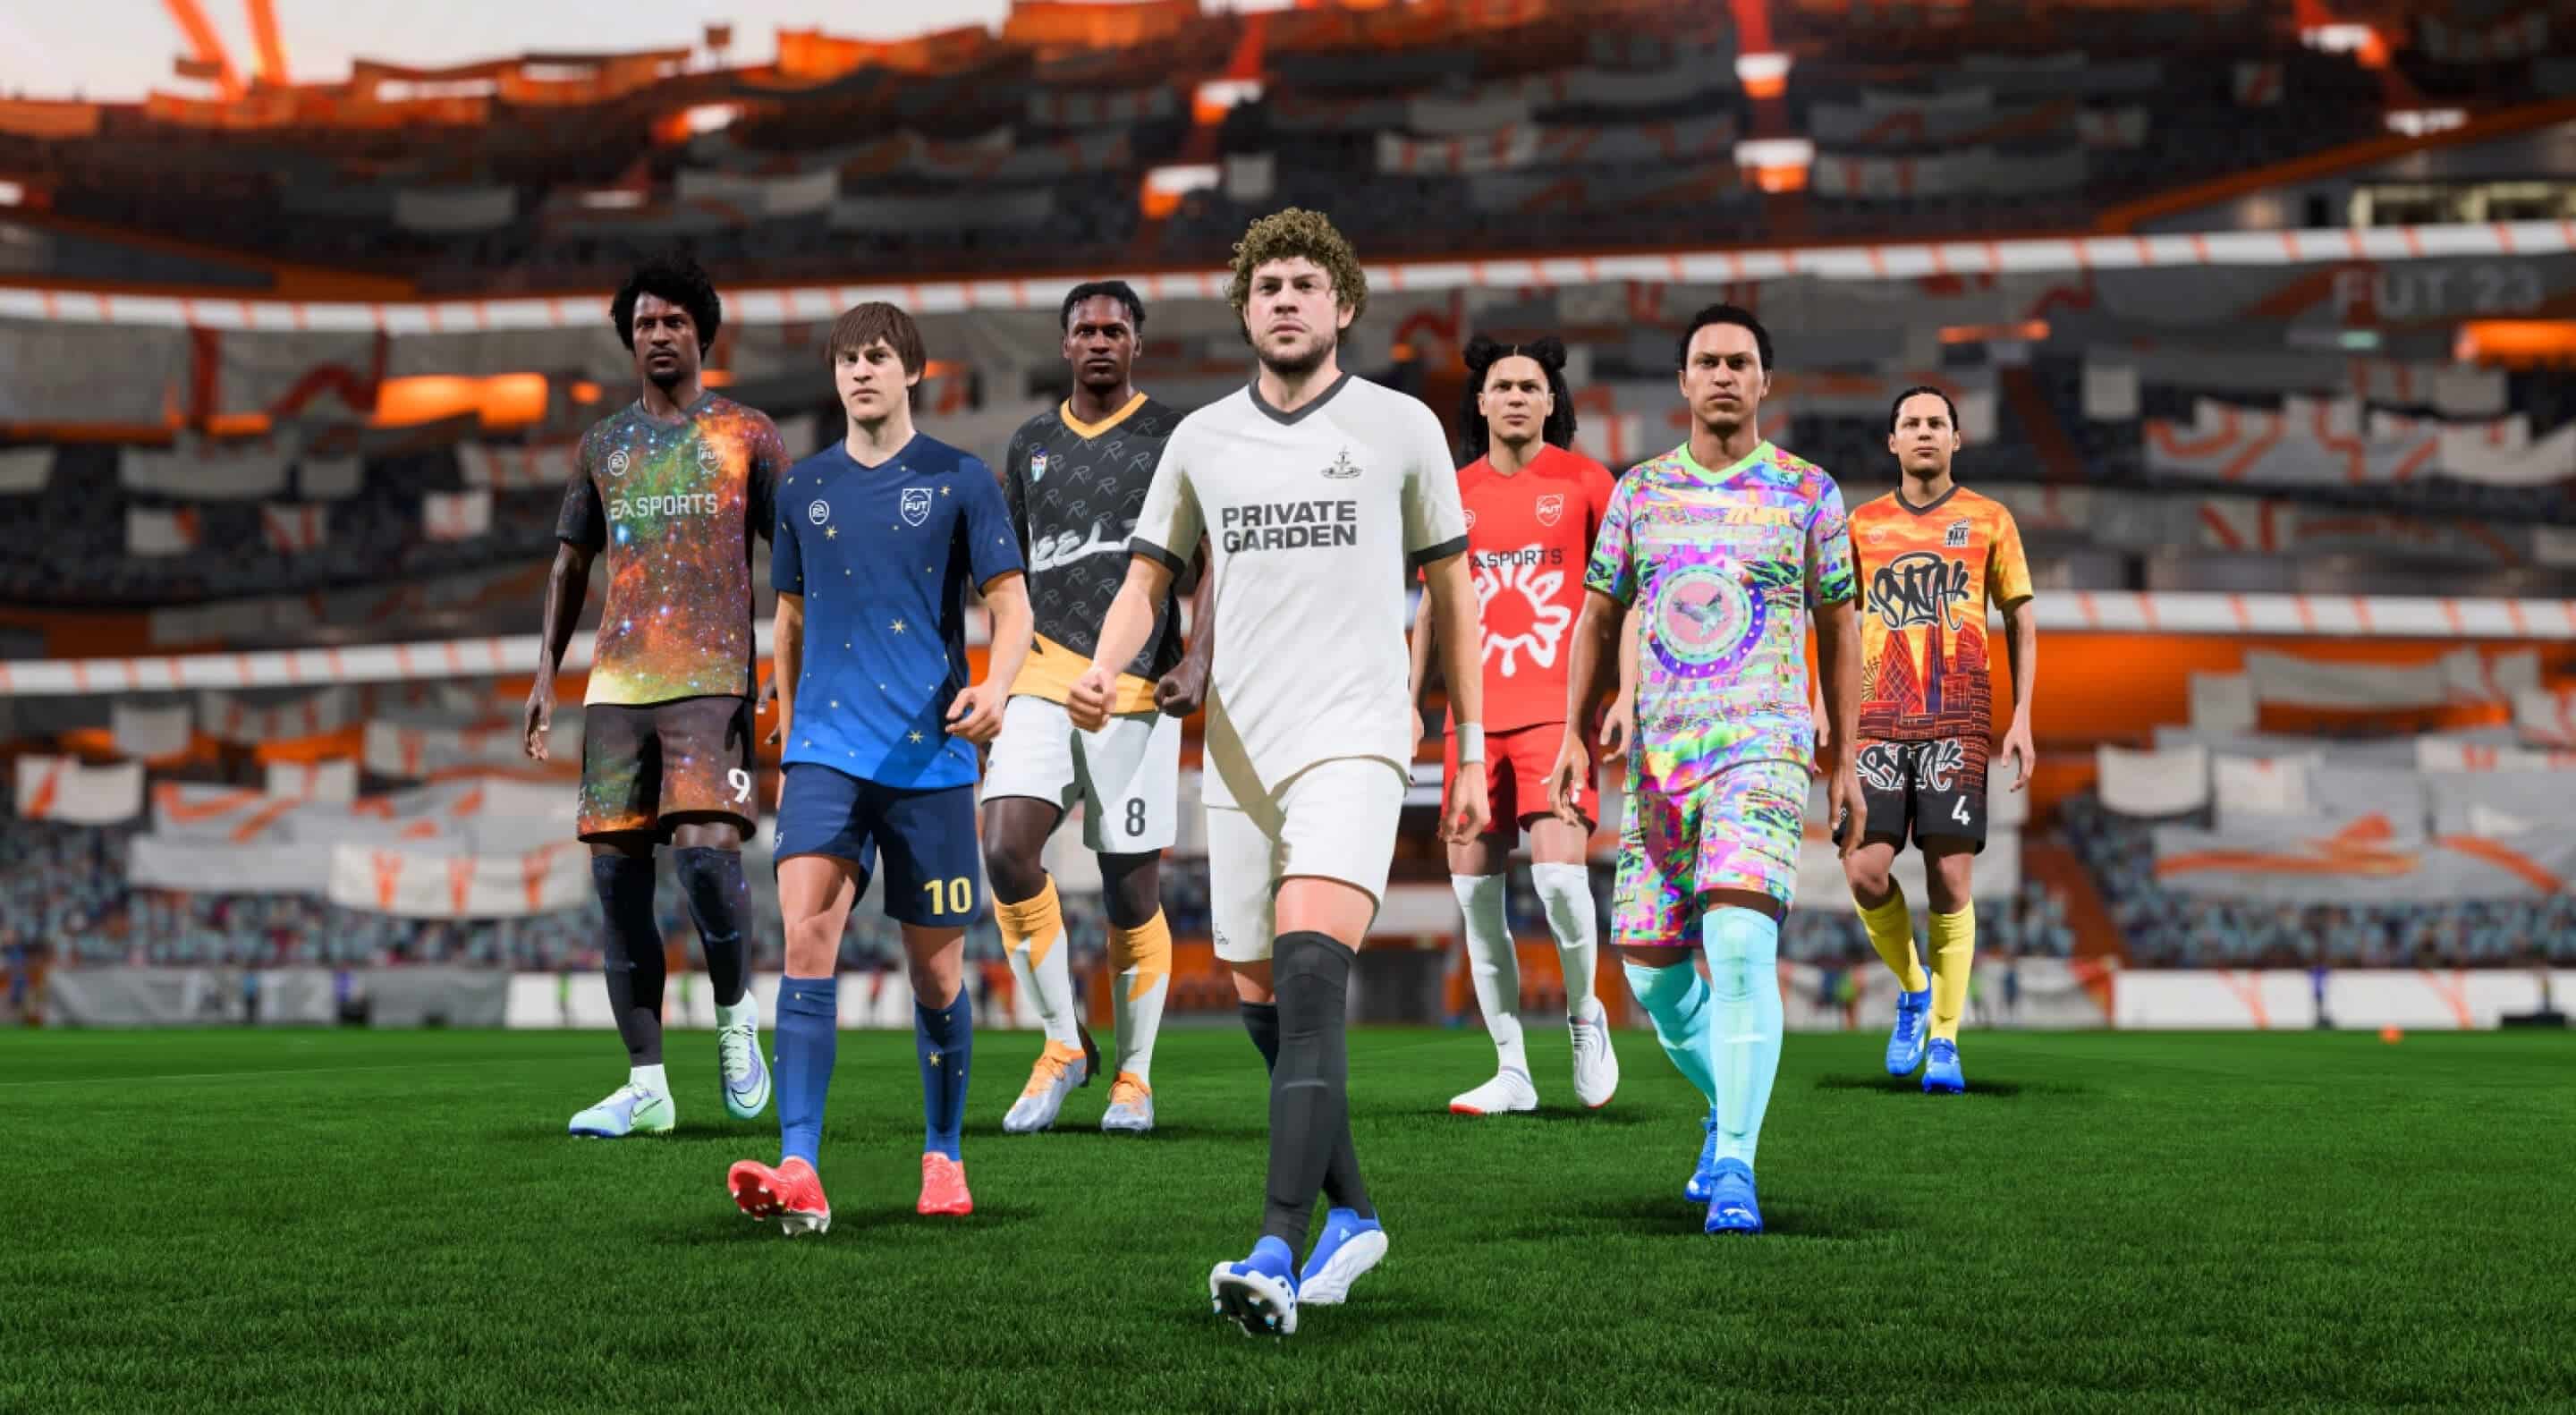 EA Sports FC: Quando sai o 'FIFA 24'? Lançamento, preço e